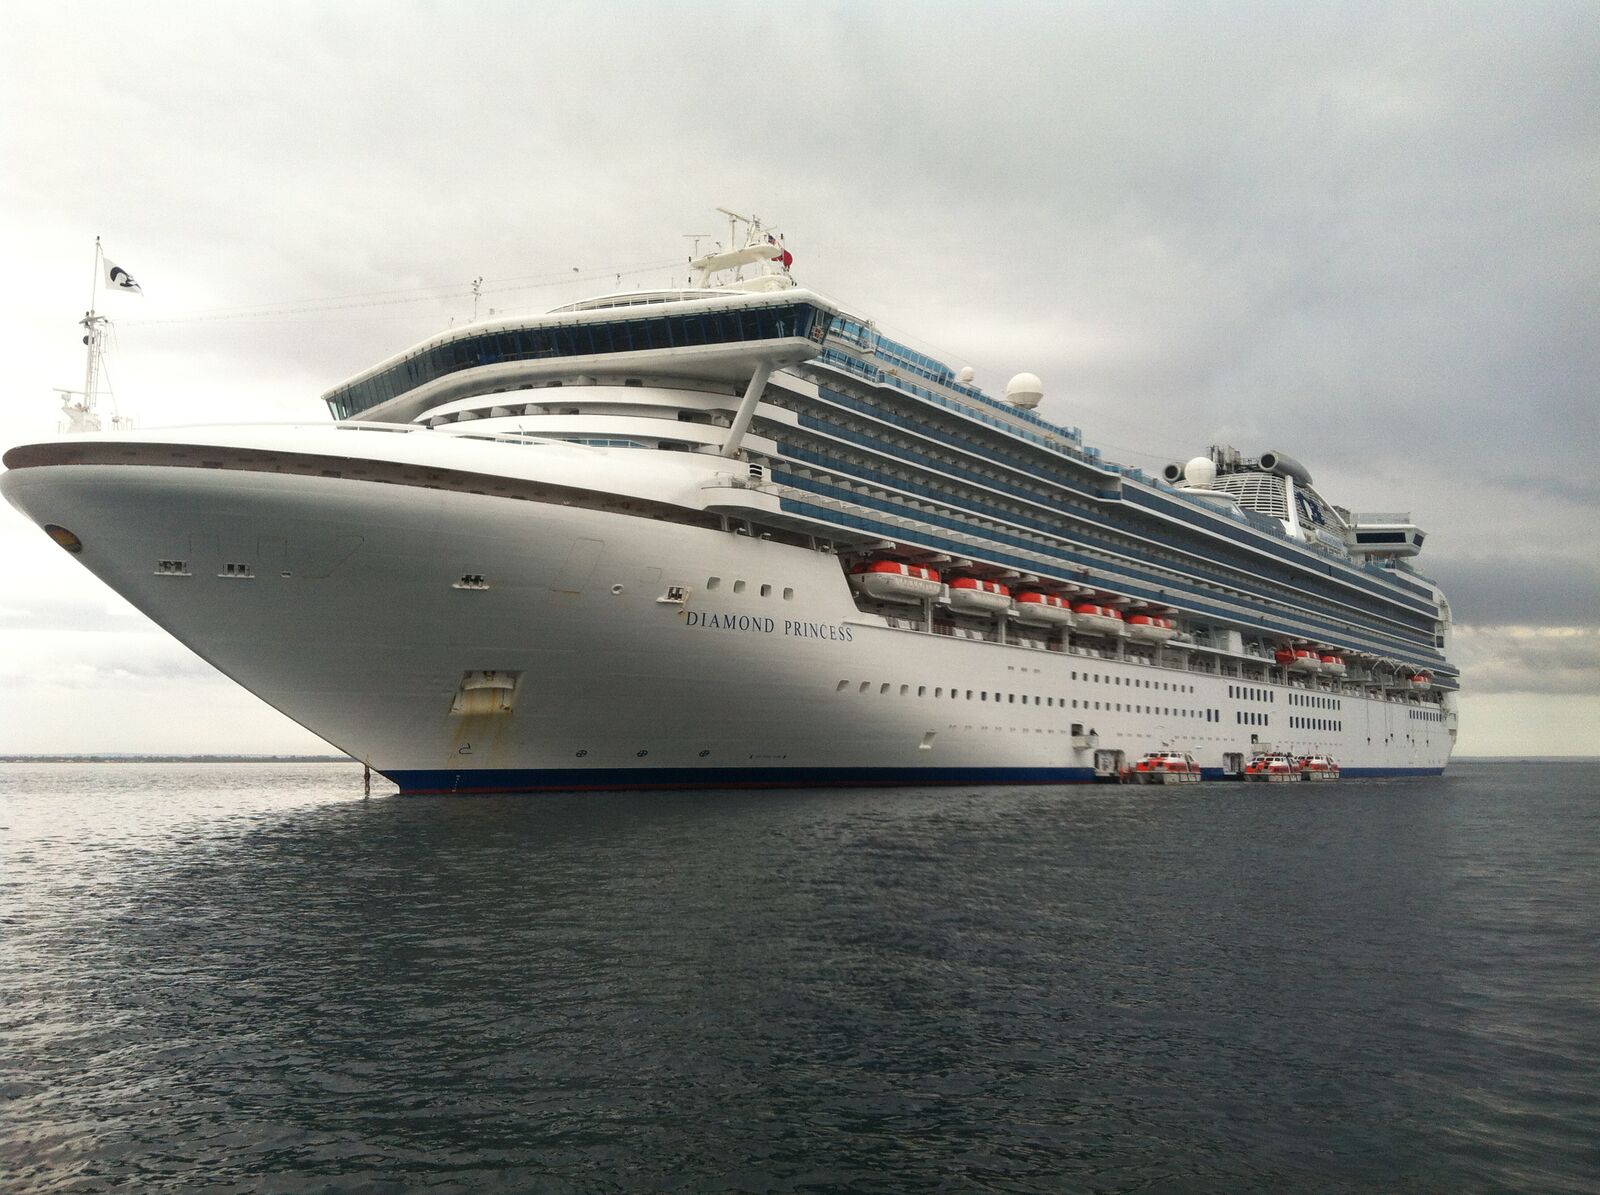 2015/16 cruise season soon to set sail